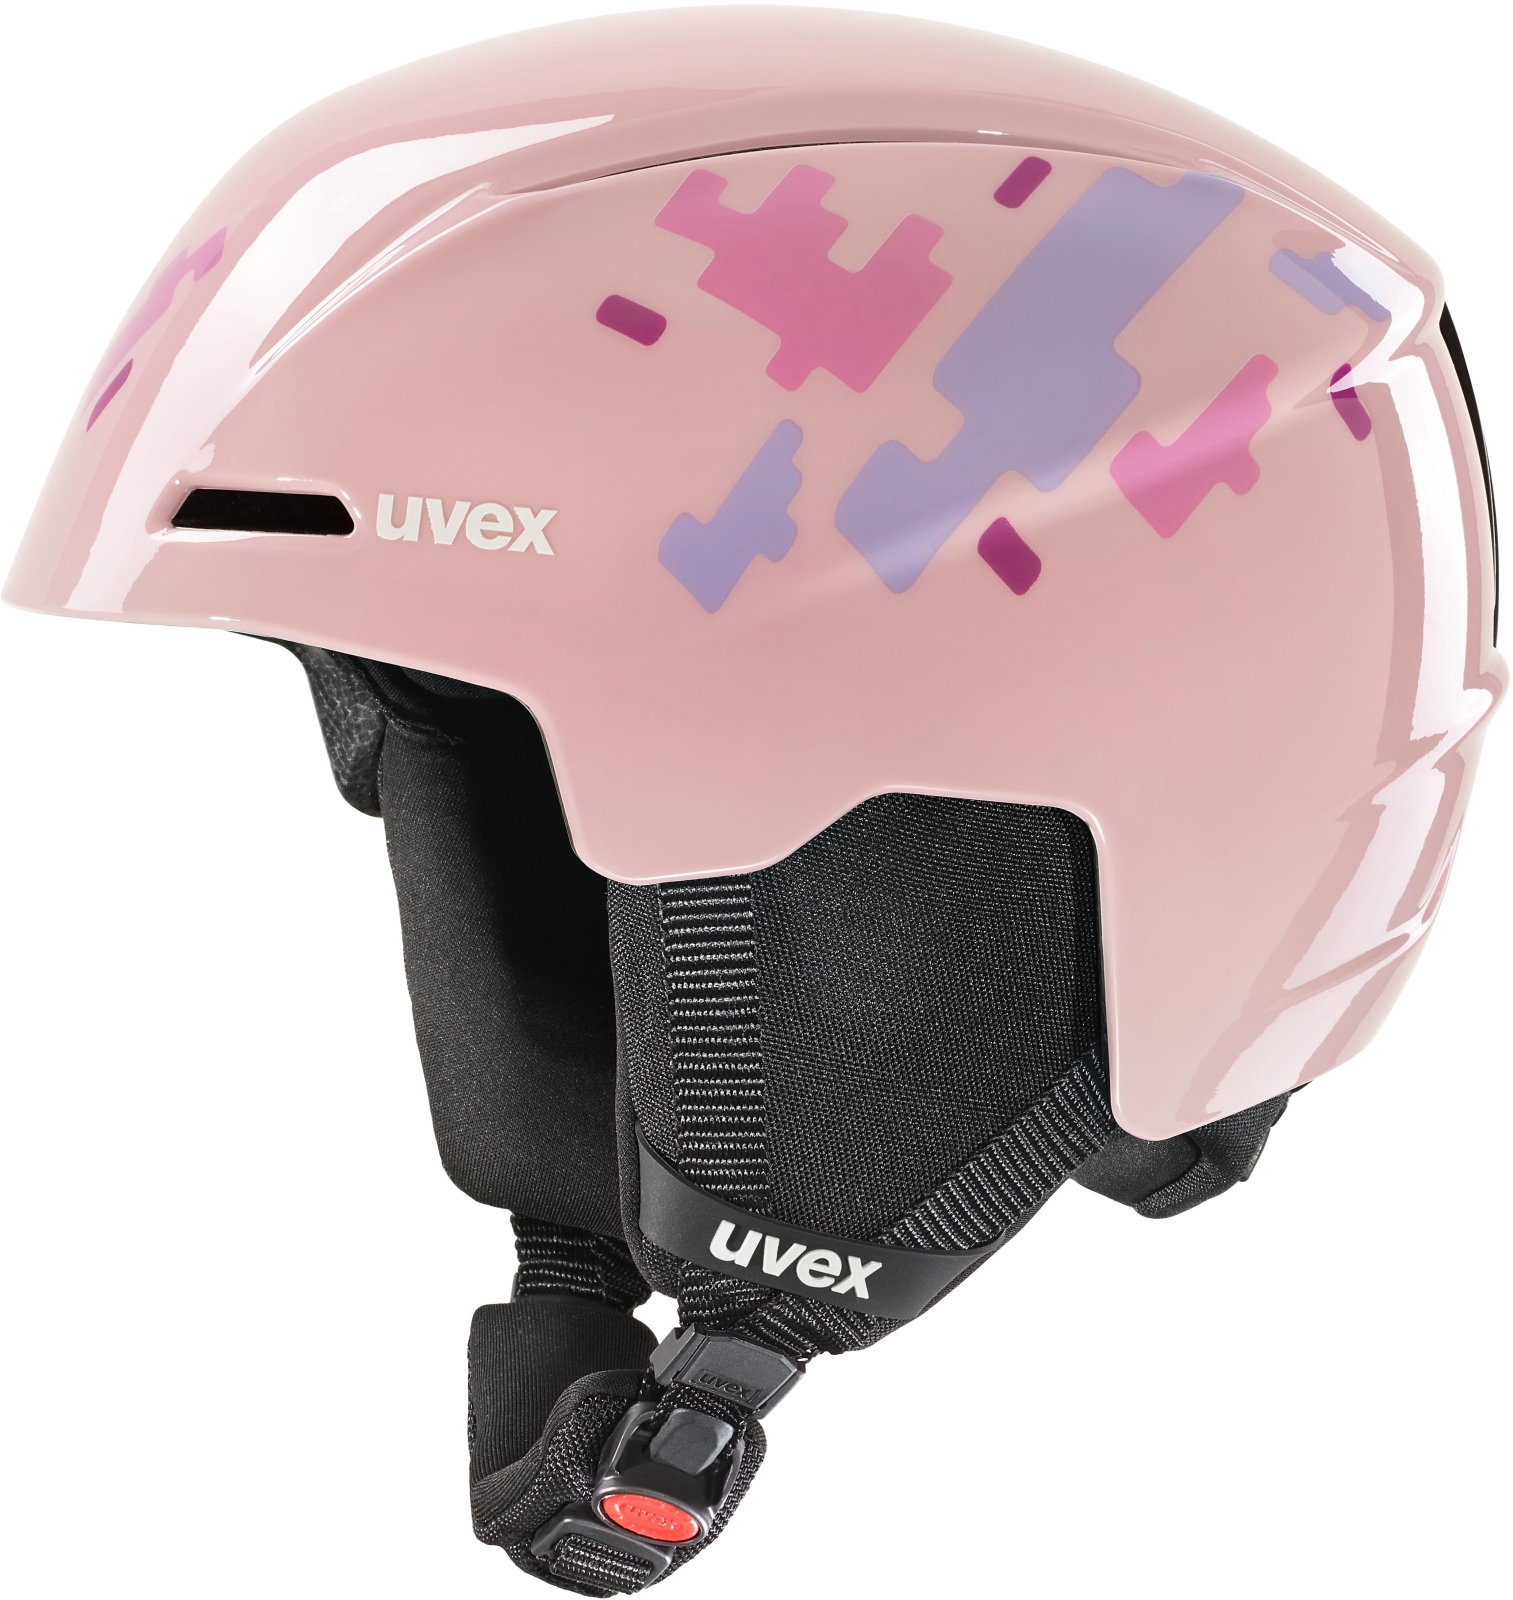 Uvex Viti - pink puzzle 46-50